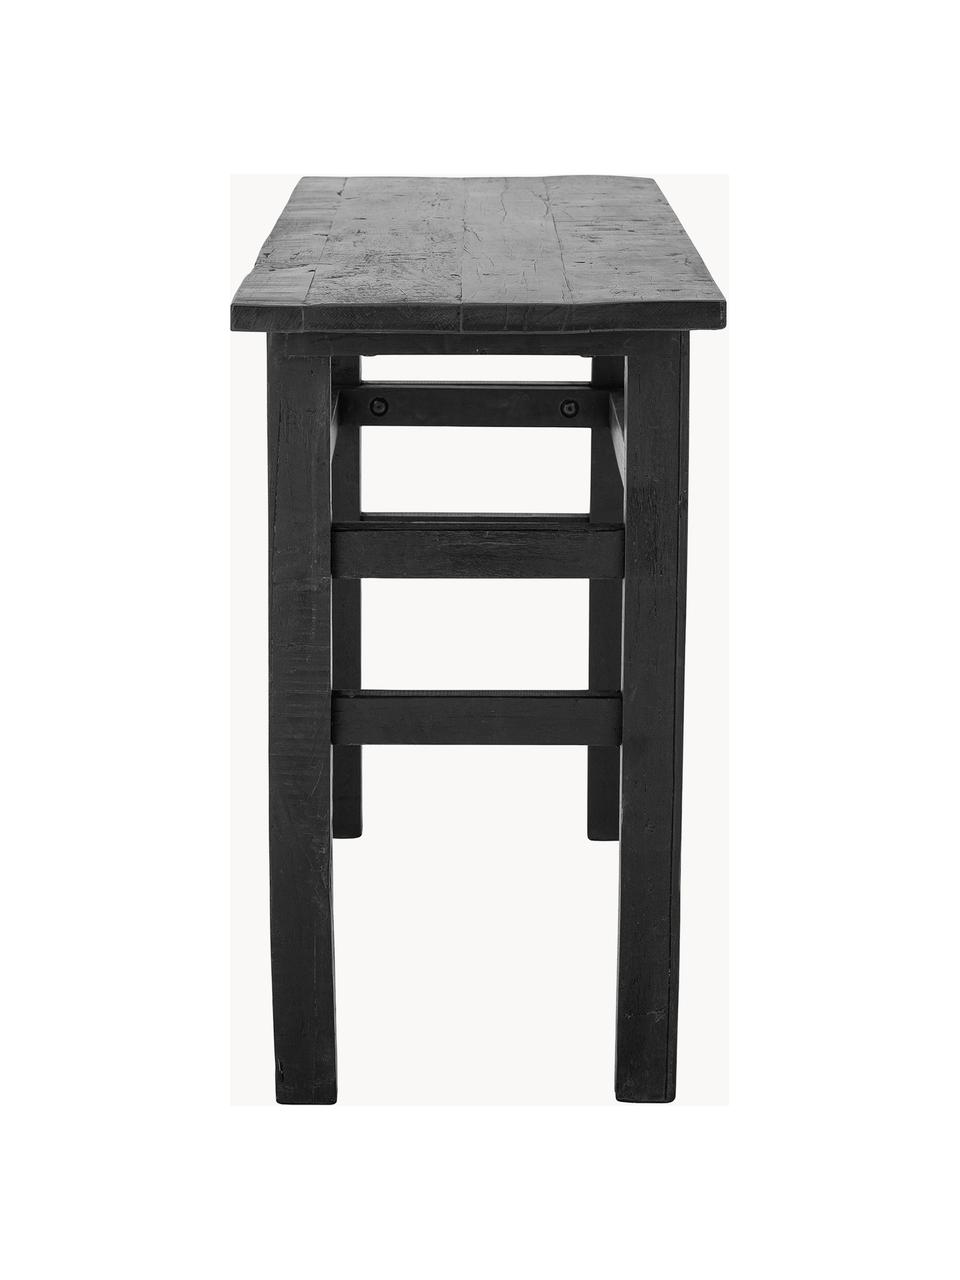 Dřevěný konzolový stolek Riber, Dřevo, Černá, Š 153 cm, V 87 cm